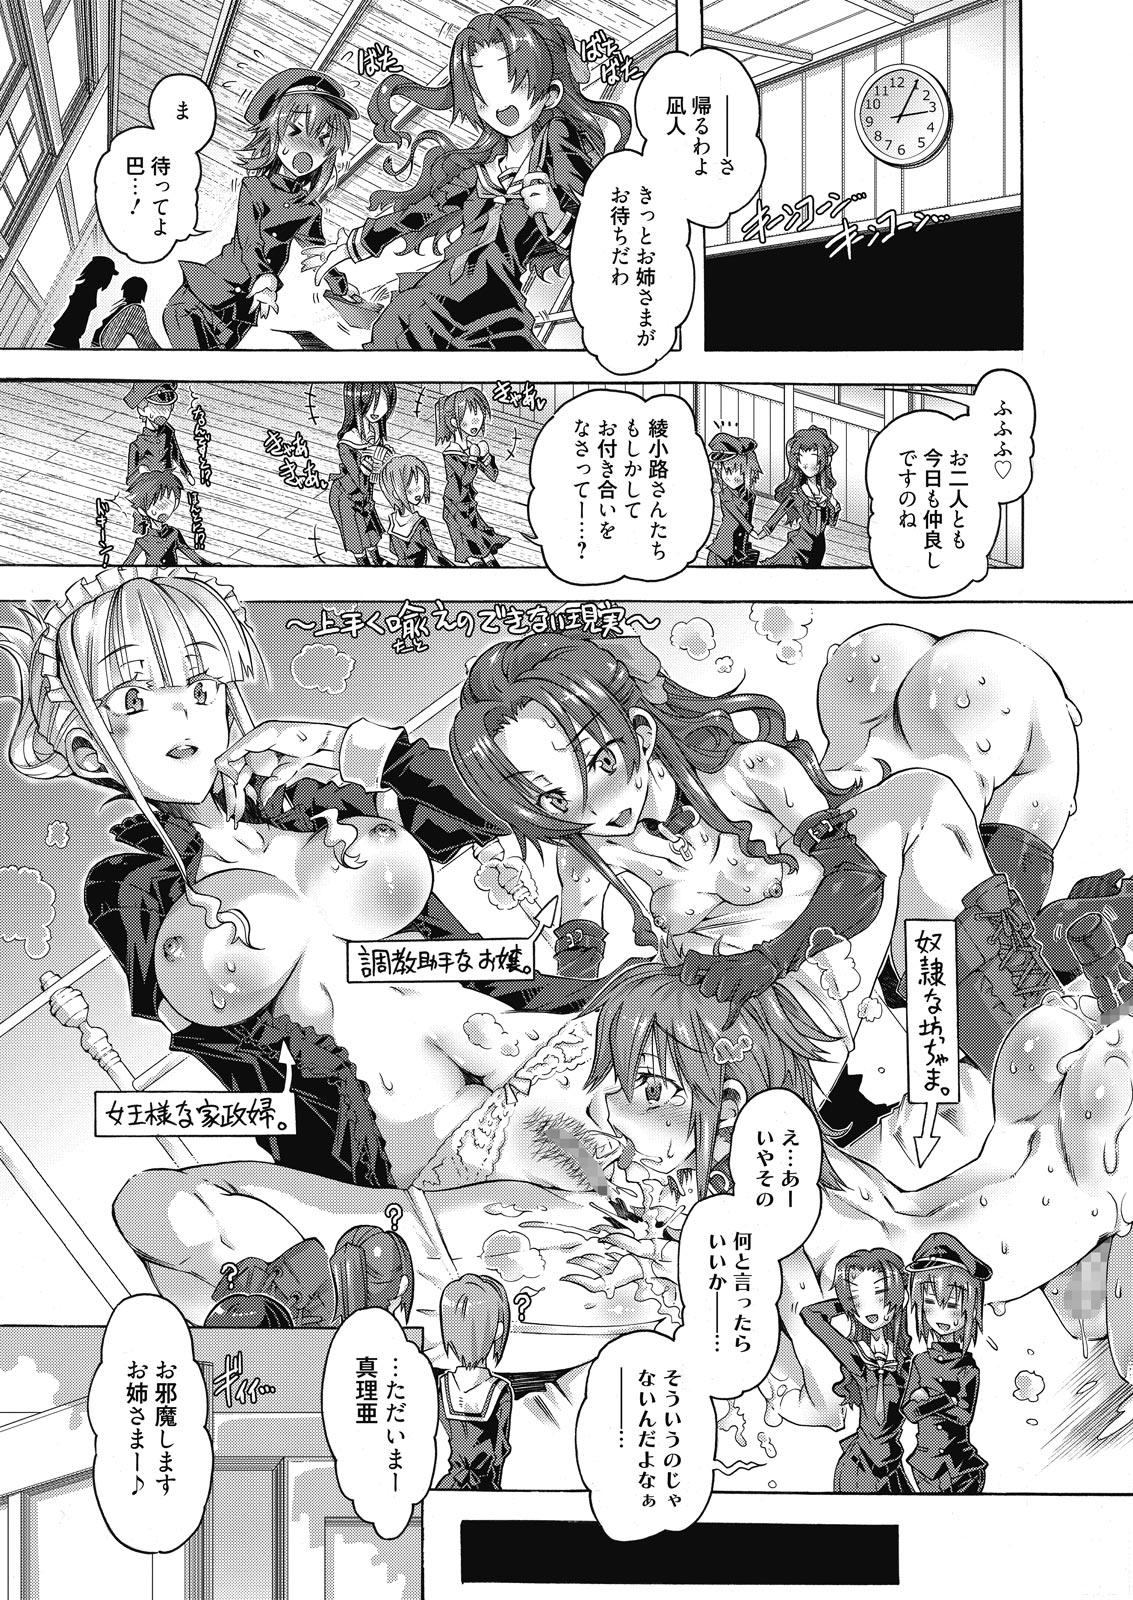 Loira Web Manga Bangaichi Vol. 10 Shower - Page 3